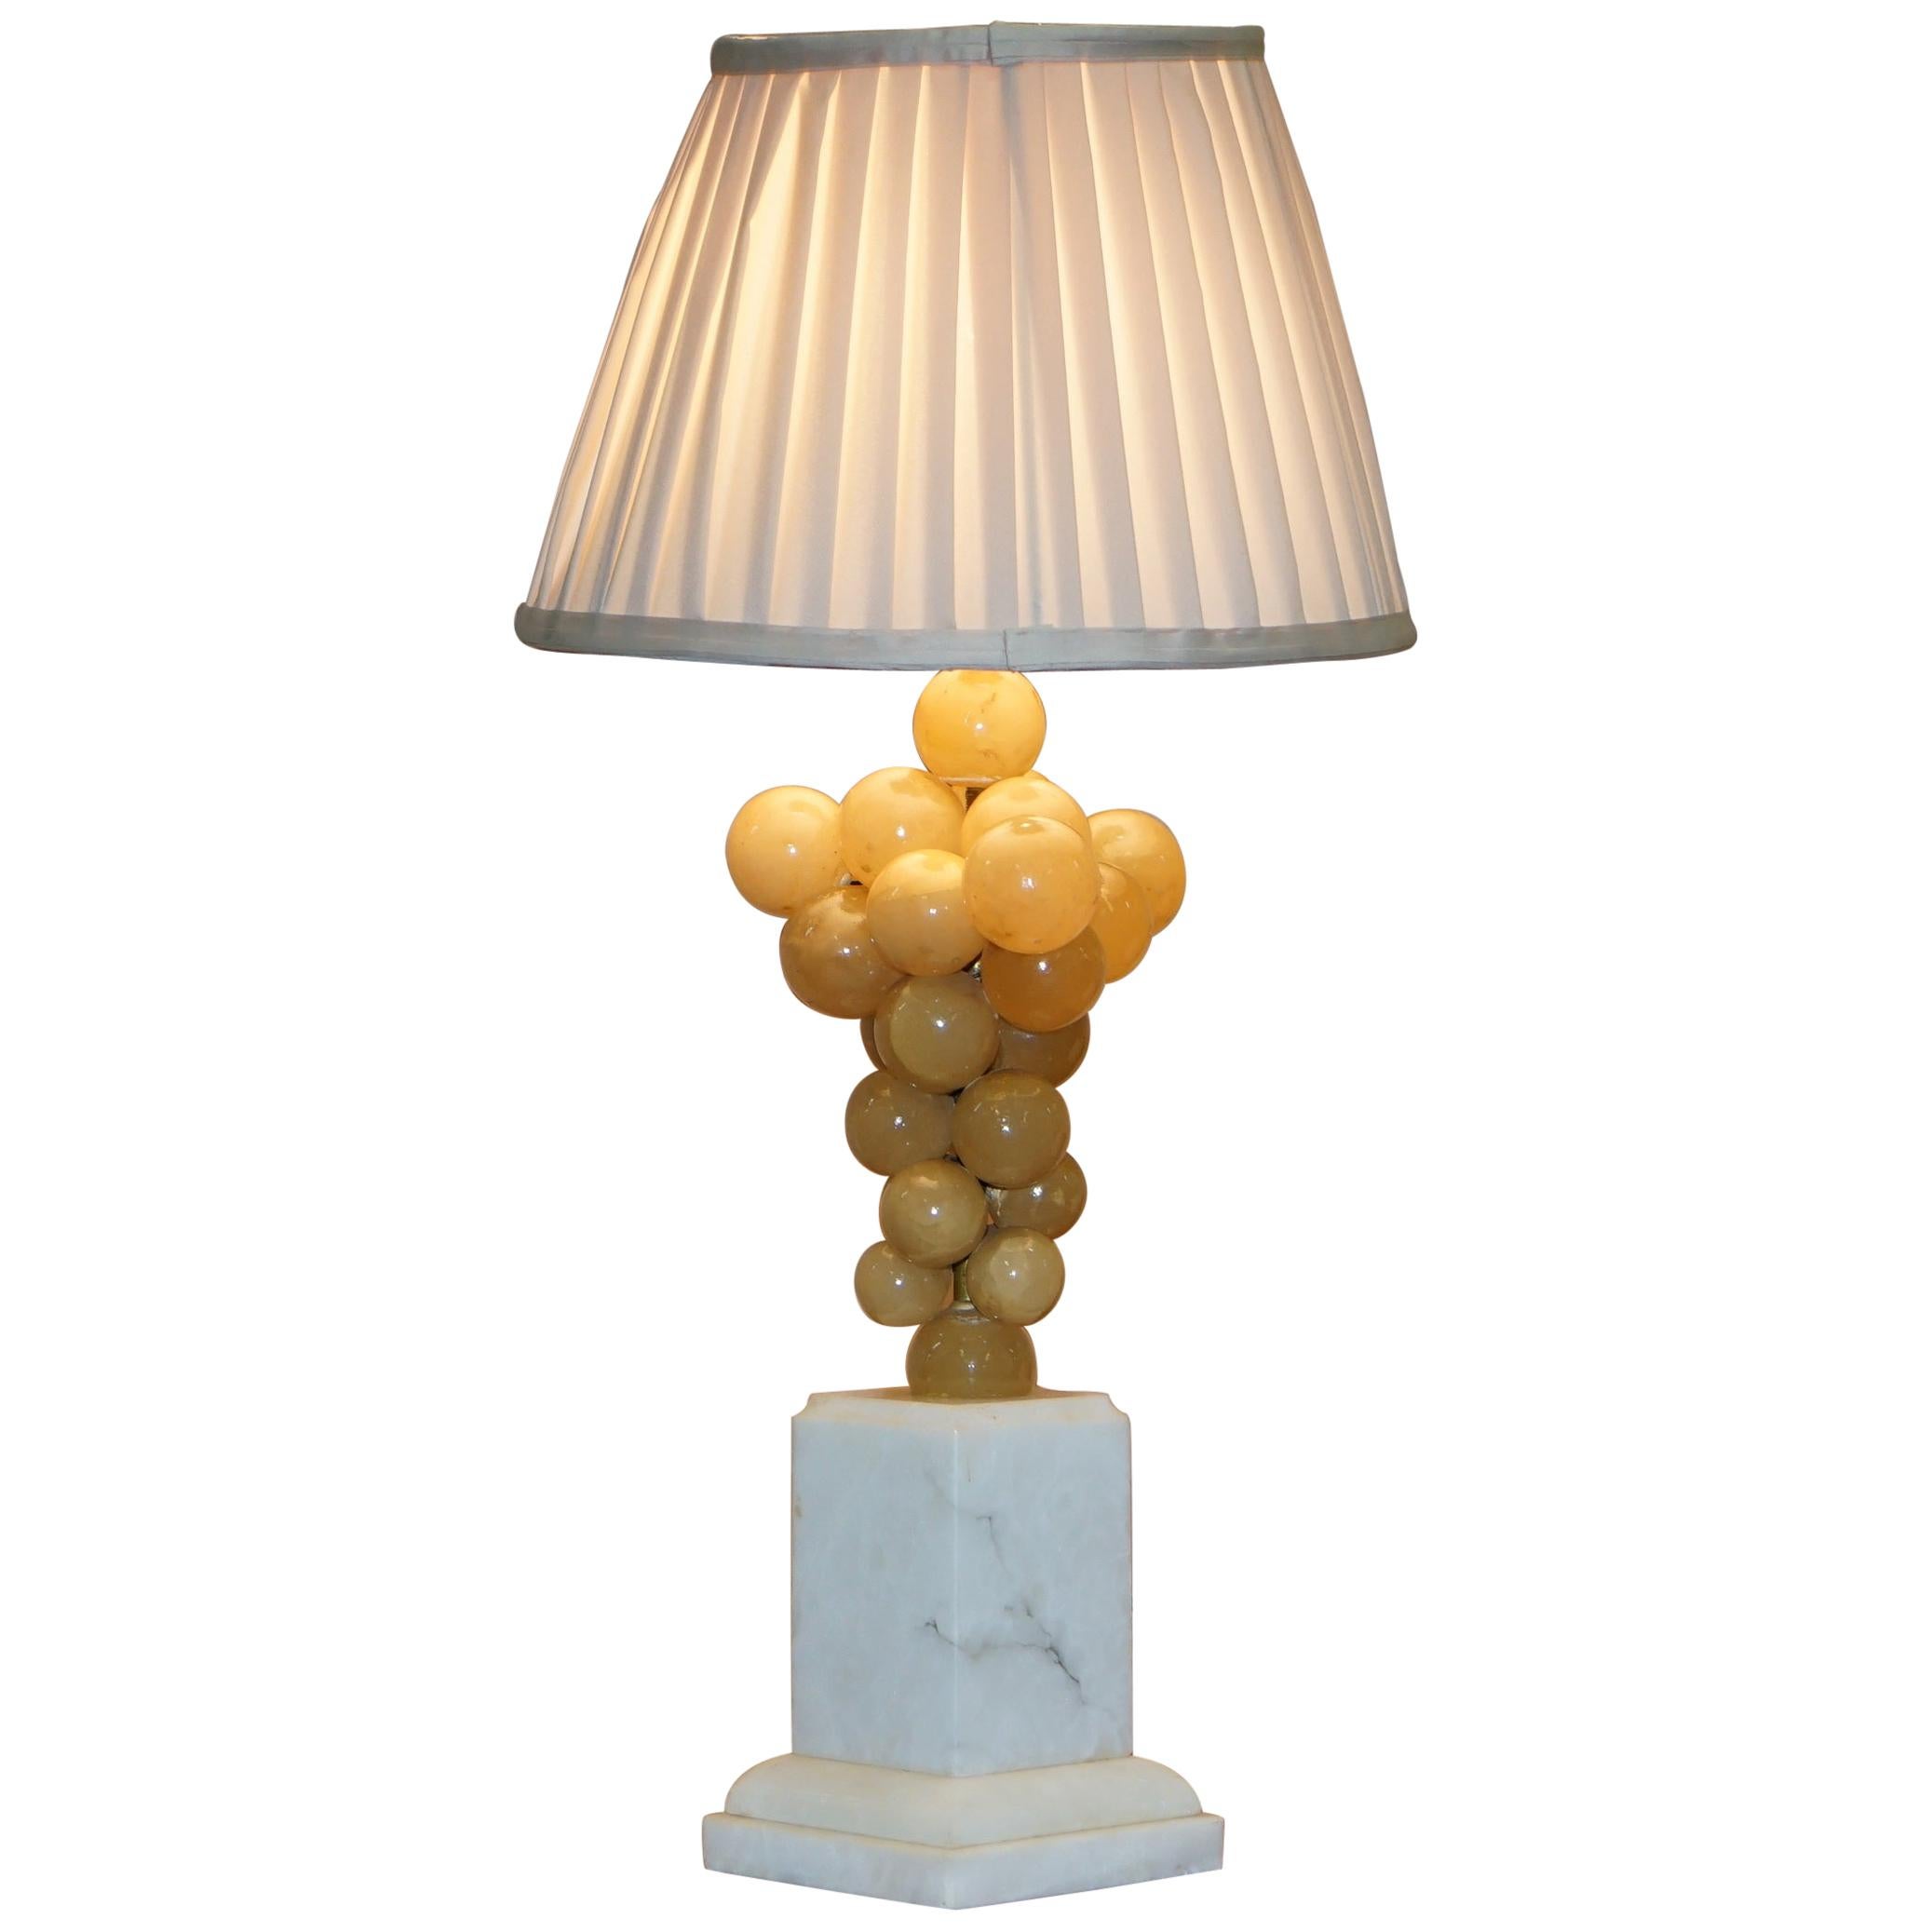 Lampe sur socle en marbre de Carrare estampillé Freddy Rensonnet avec raisins d'albâtre